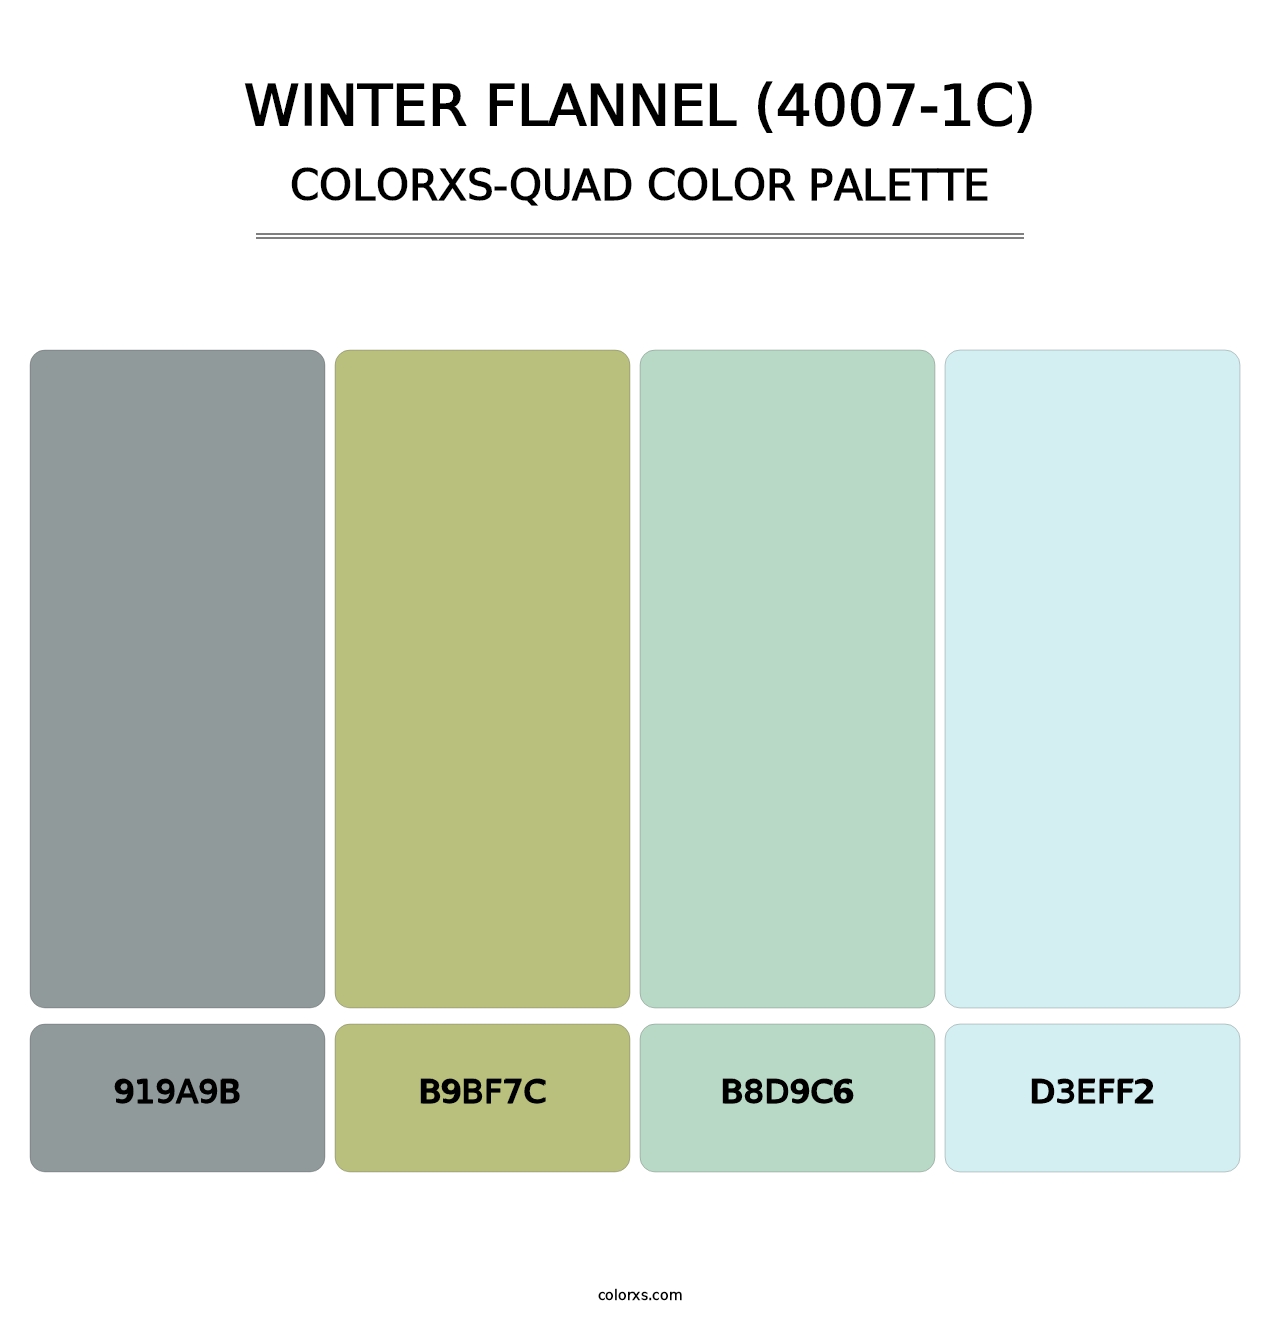 Winter Flannel (4007-1C) - Colorxs Quad Palette